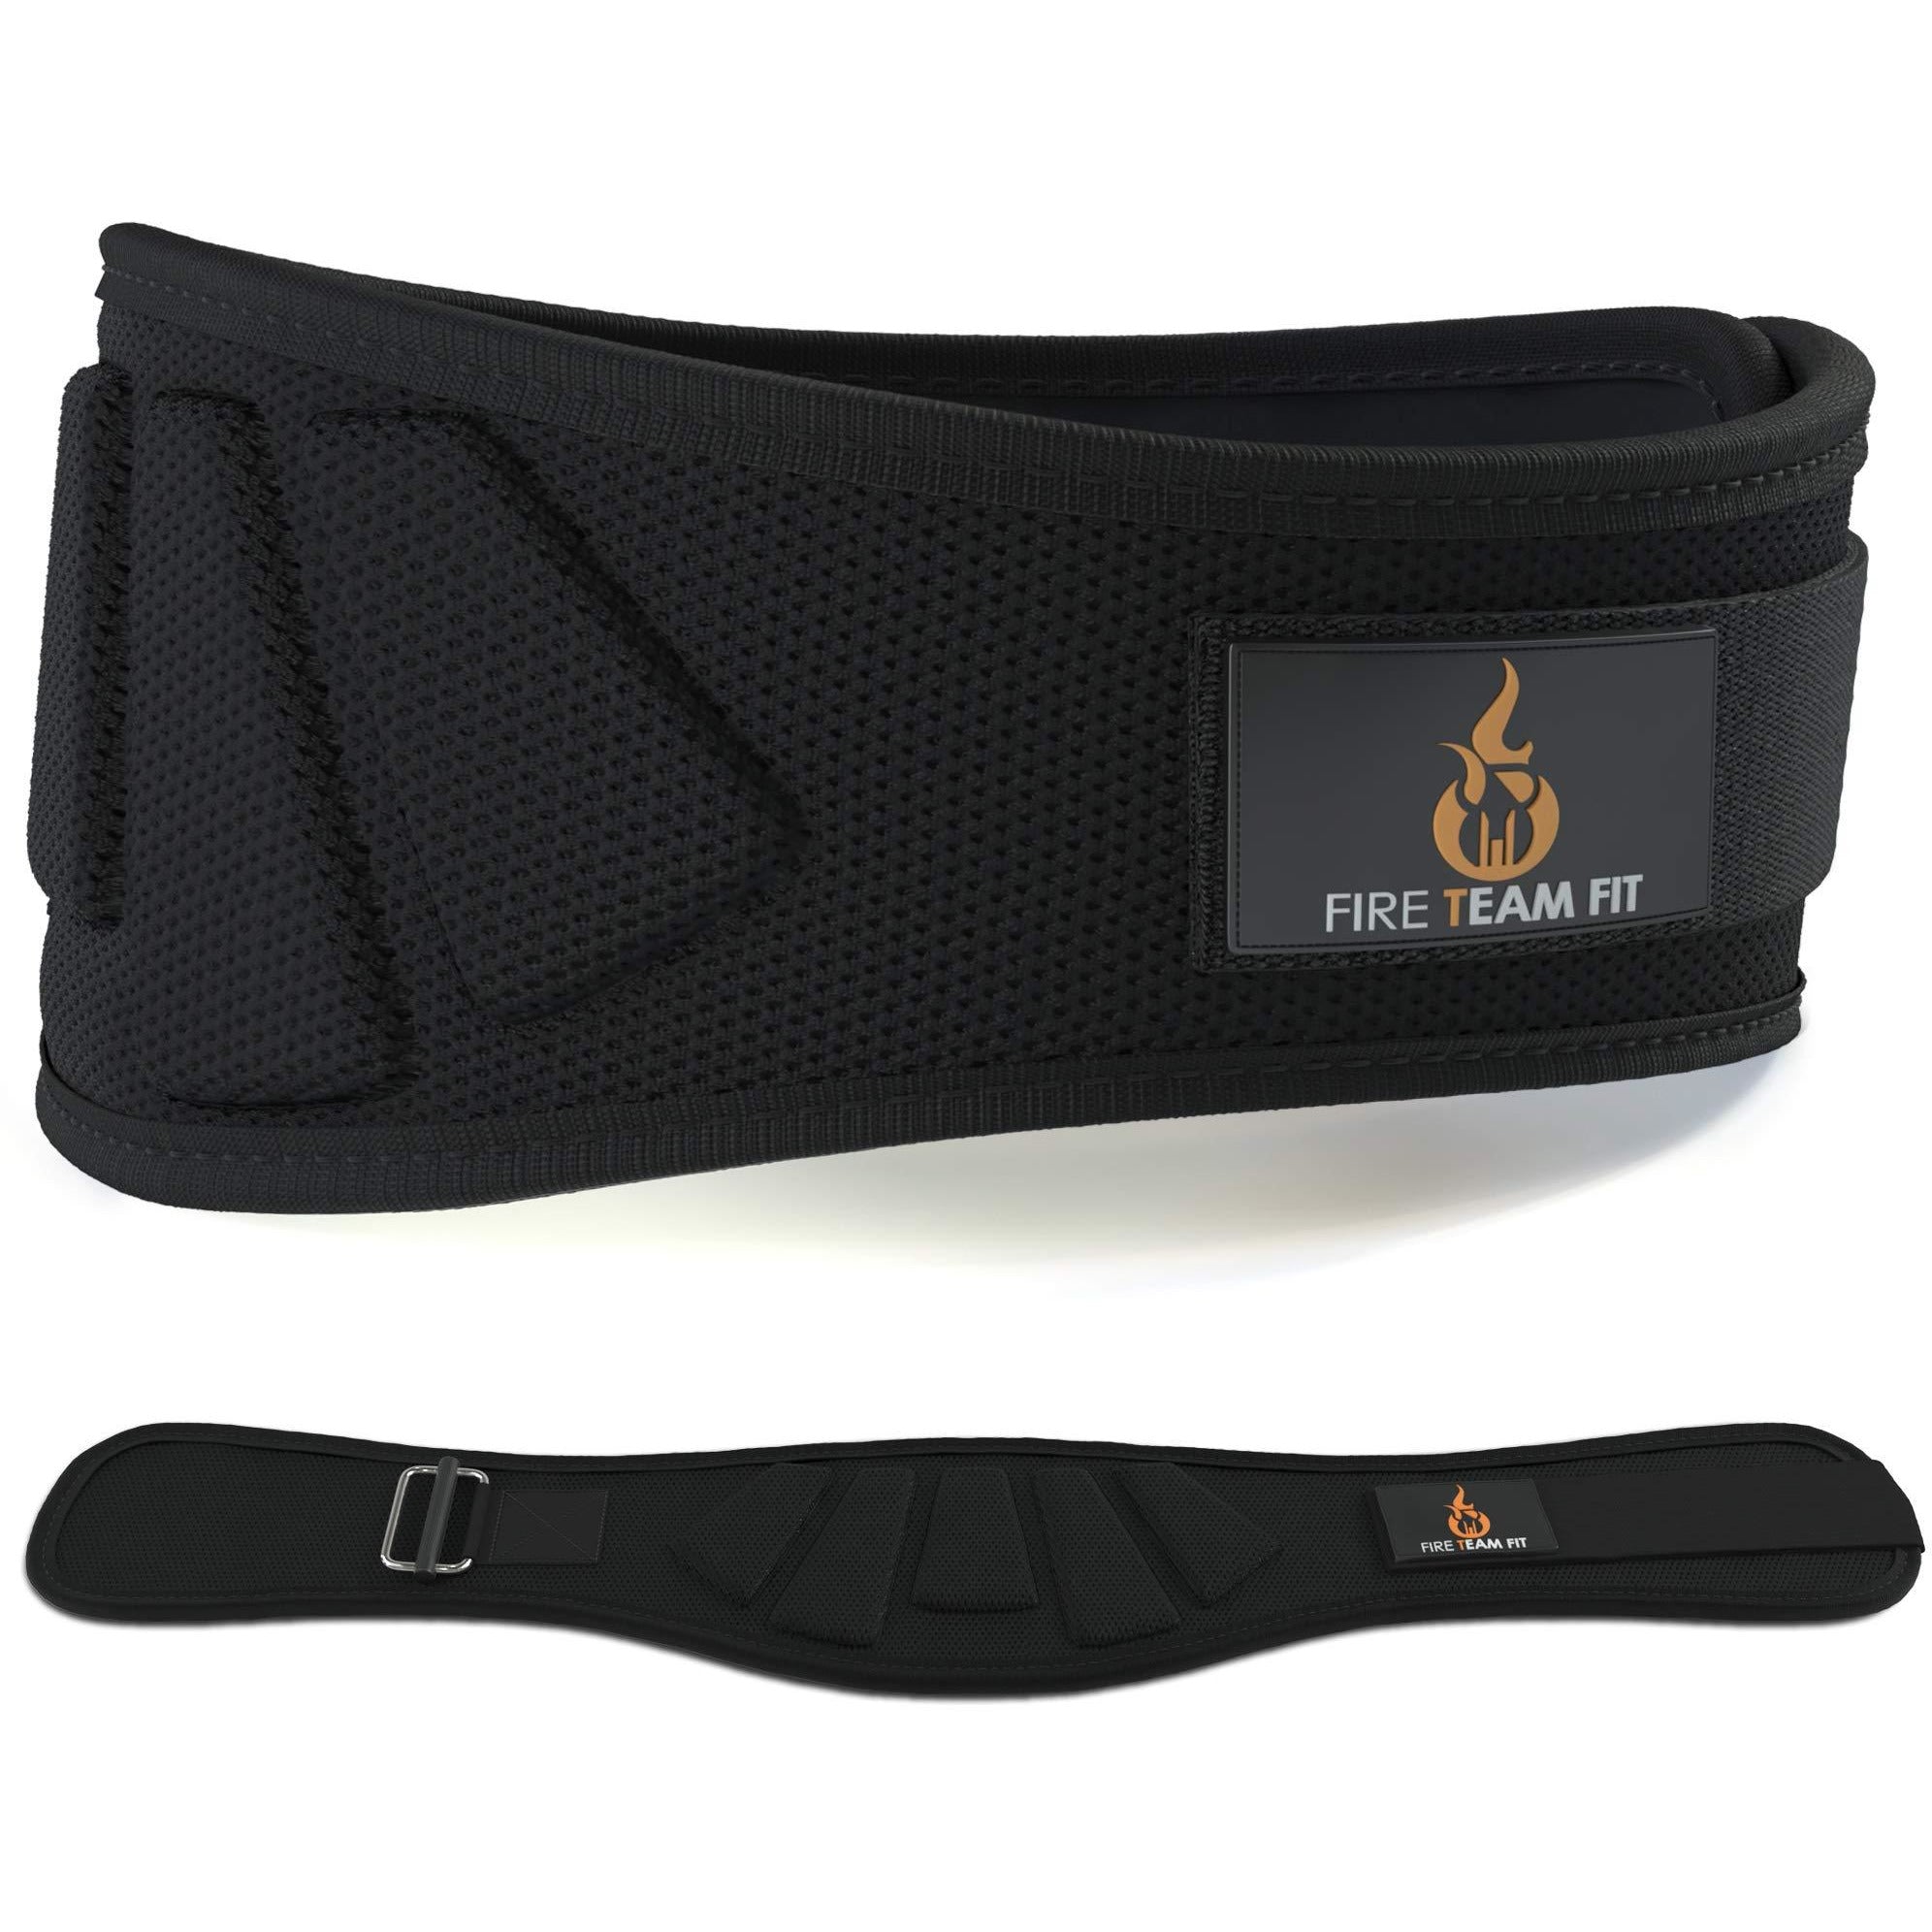 Fire Team Fit Lifting Belt, Gym Belt, Weight Lifting Belts, Weight Belts for Lifting (Black, 32" - 38" Around Navel, Medium)